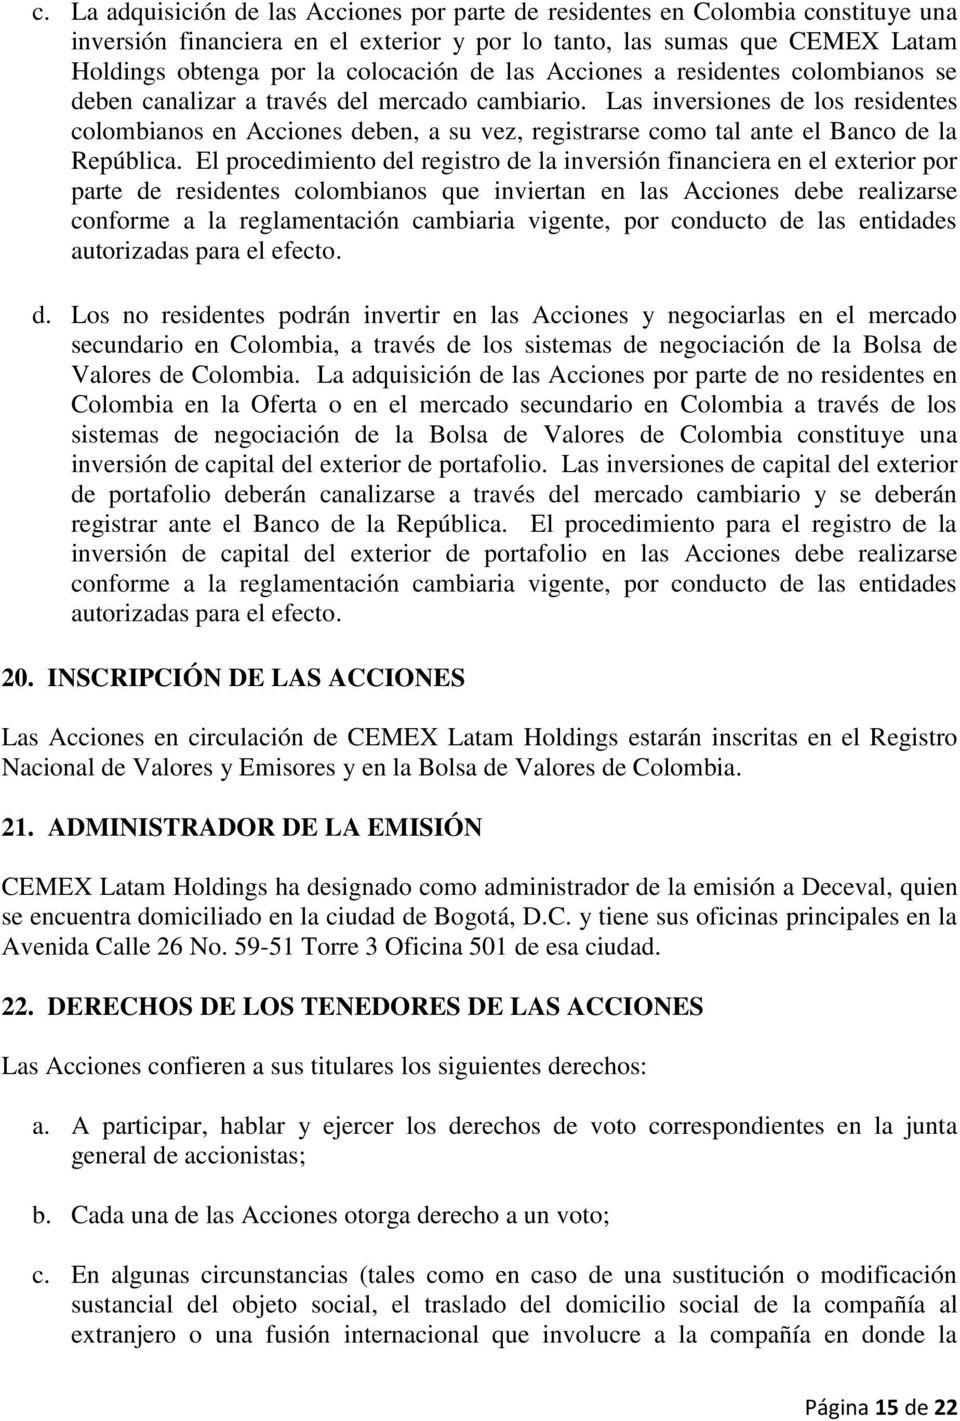 Las inversiones de los residentes colombianos en Acciones deben, a su vez, registrarse como tal ante el Banco de la República.